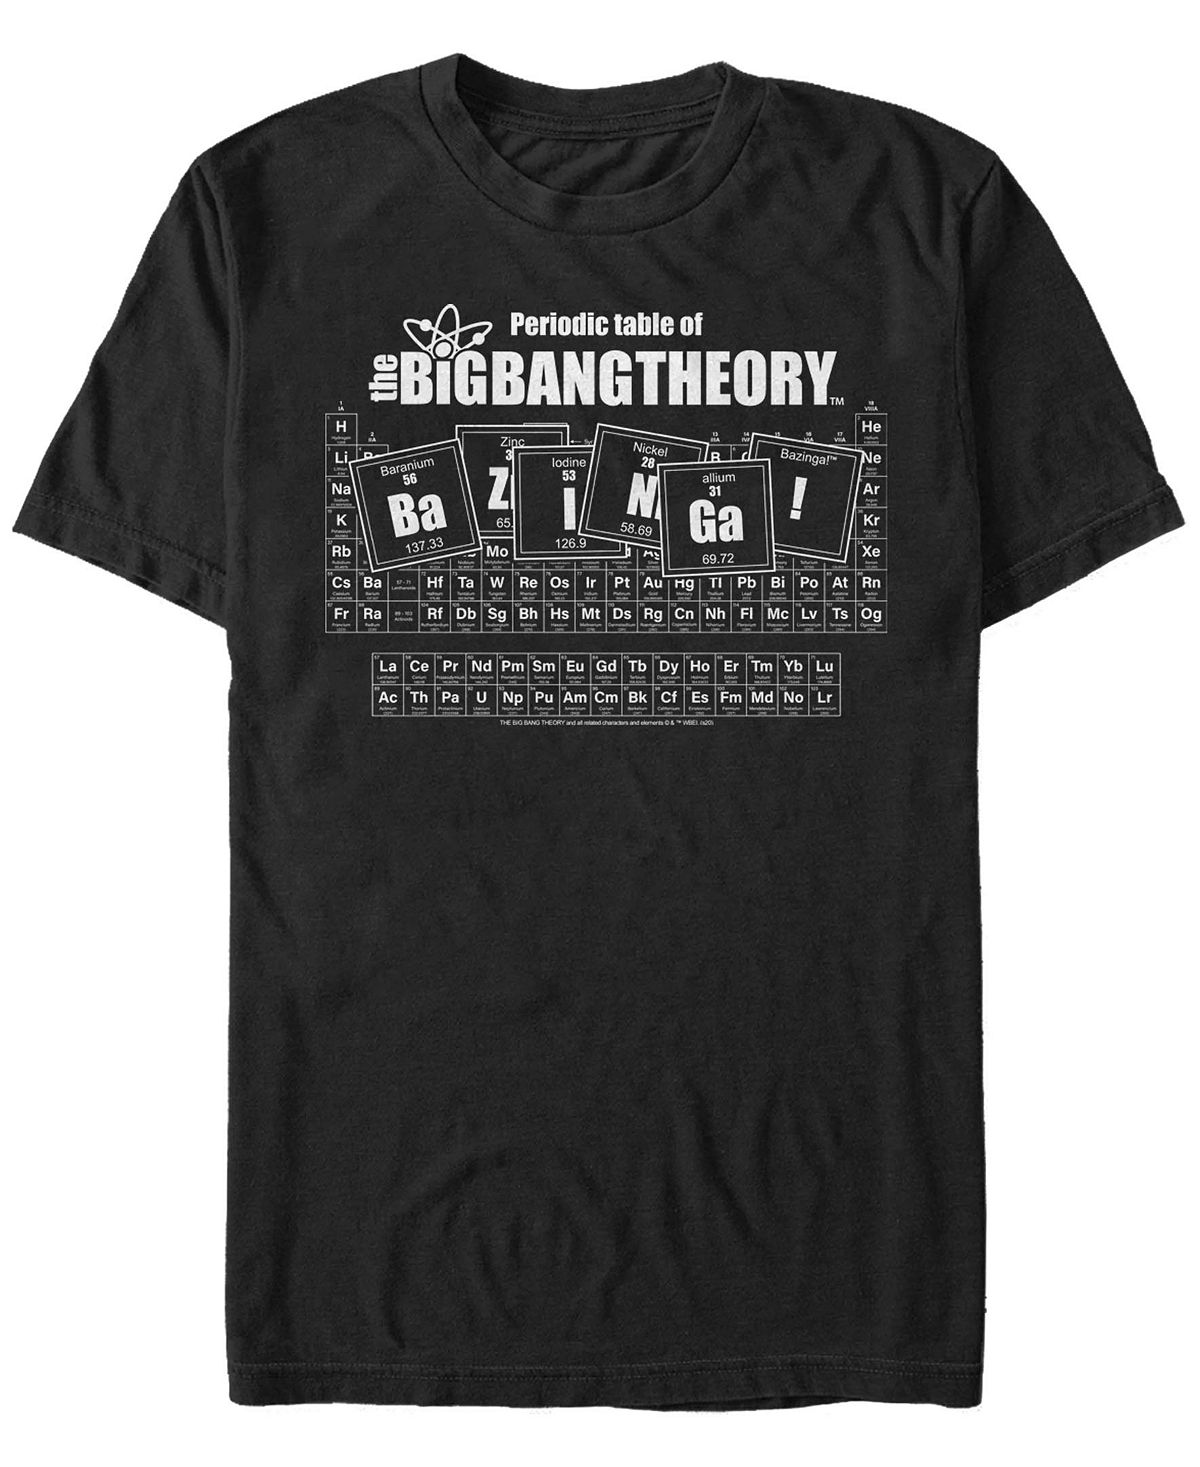 Мужская футболка с коротким рукавом the big bang theory table of bazinga Fifth Sun, черный художественные книги махаон книга тук тук тук